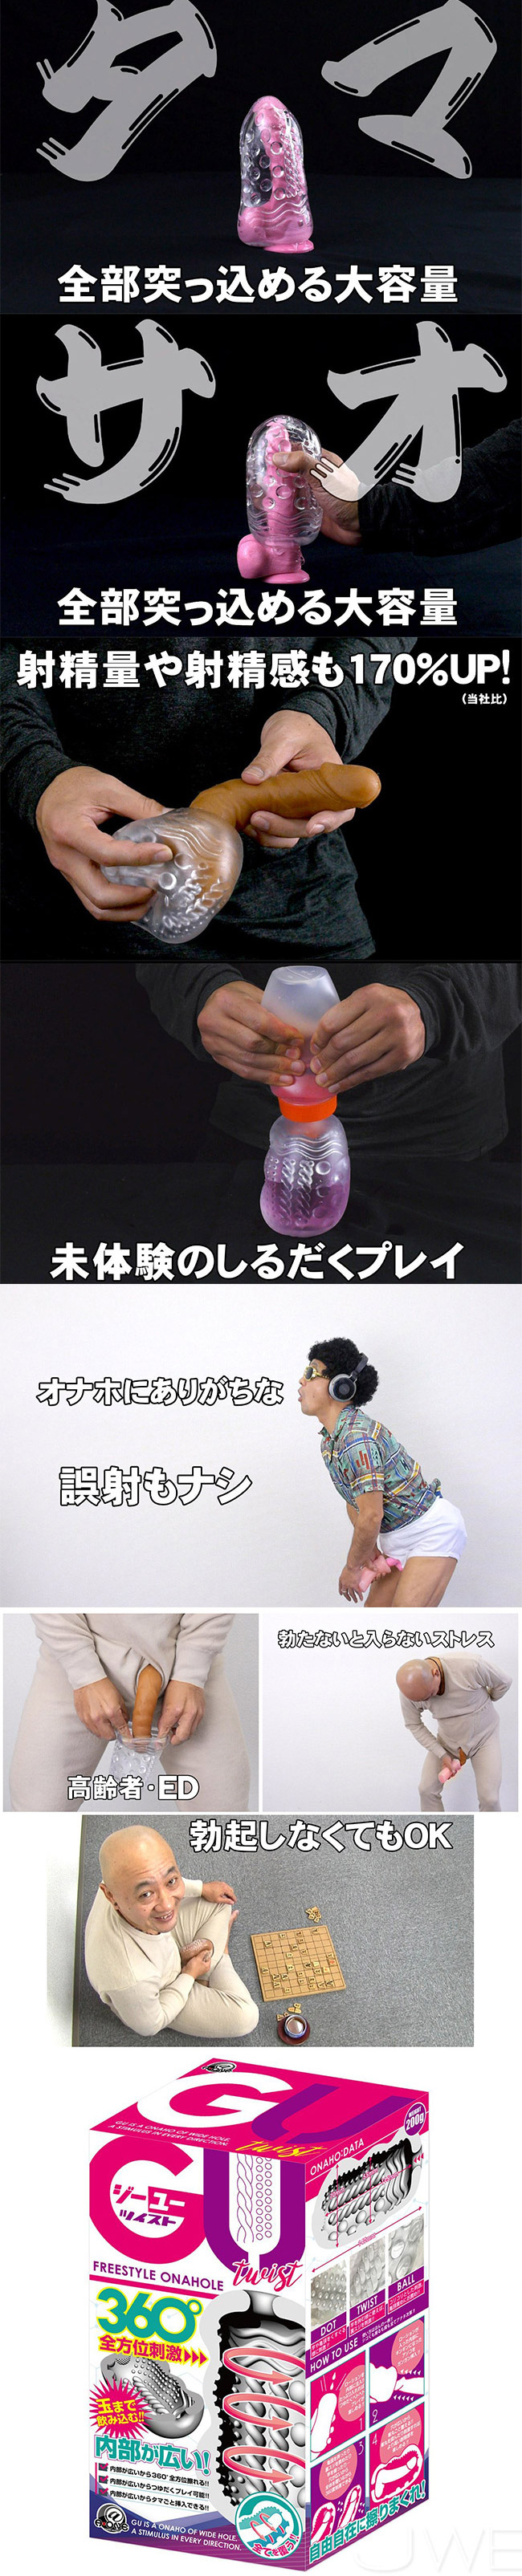 日本原裝進口A-ONE．GU [ジーユー]  全年齡適用 360度包覆自慰套